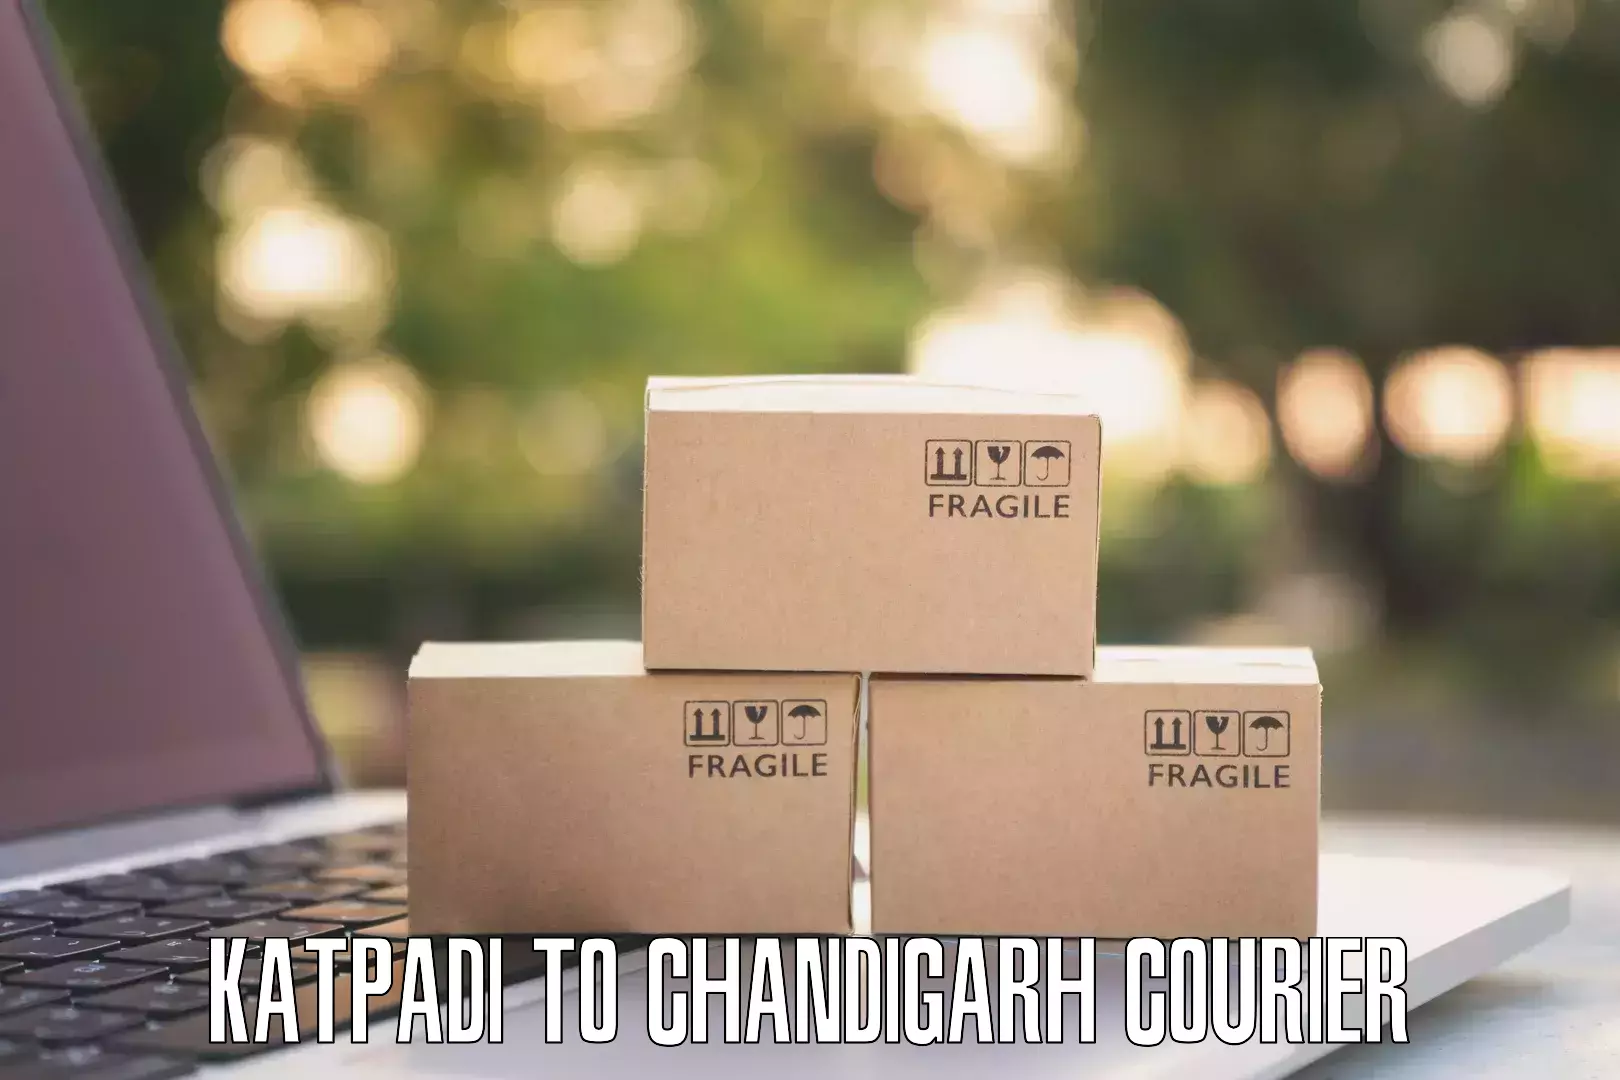 Customized shipping options Katpadi to Chandigarh